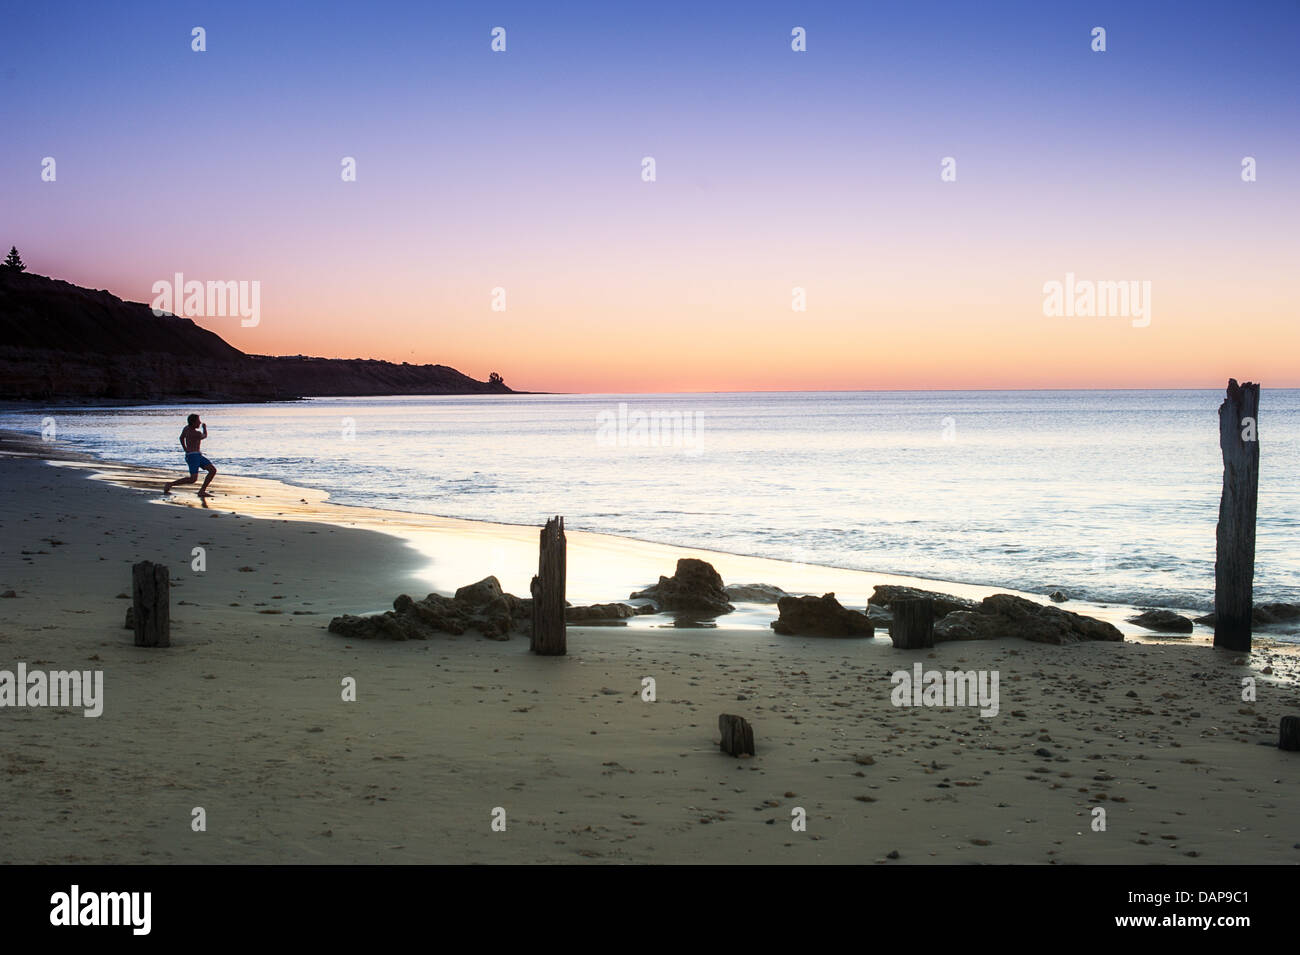 La silhouette d'une personne Skipping Stones au coucher du soleil sur les eaux calmes du Port de l'Australie plage Alan Jaume & Fils. Banque D'Images